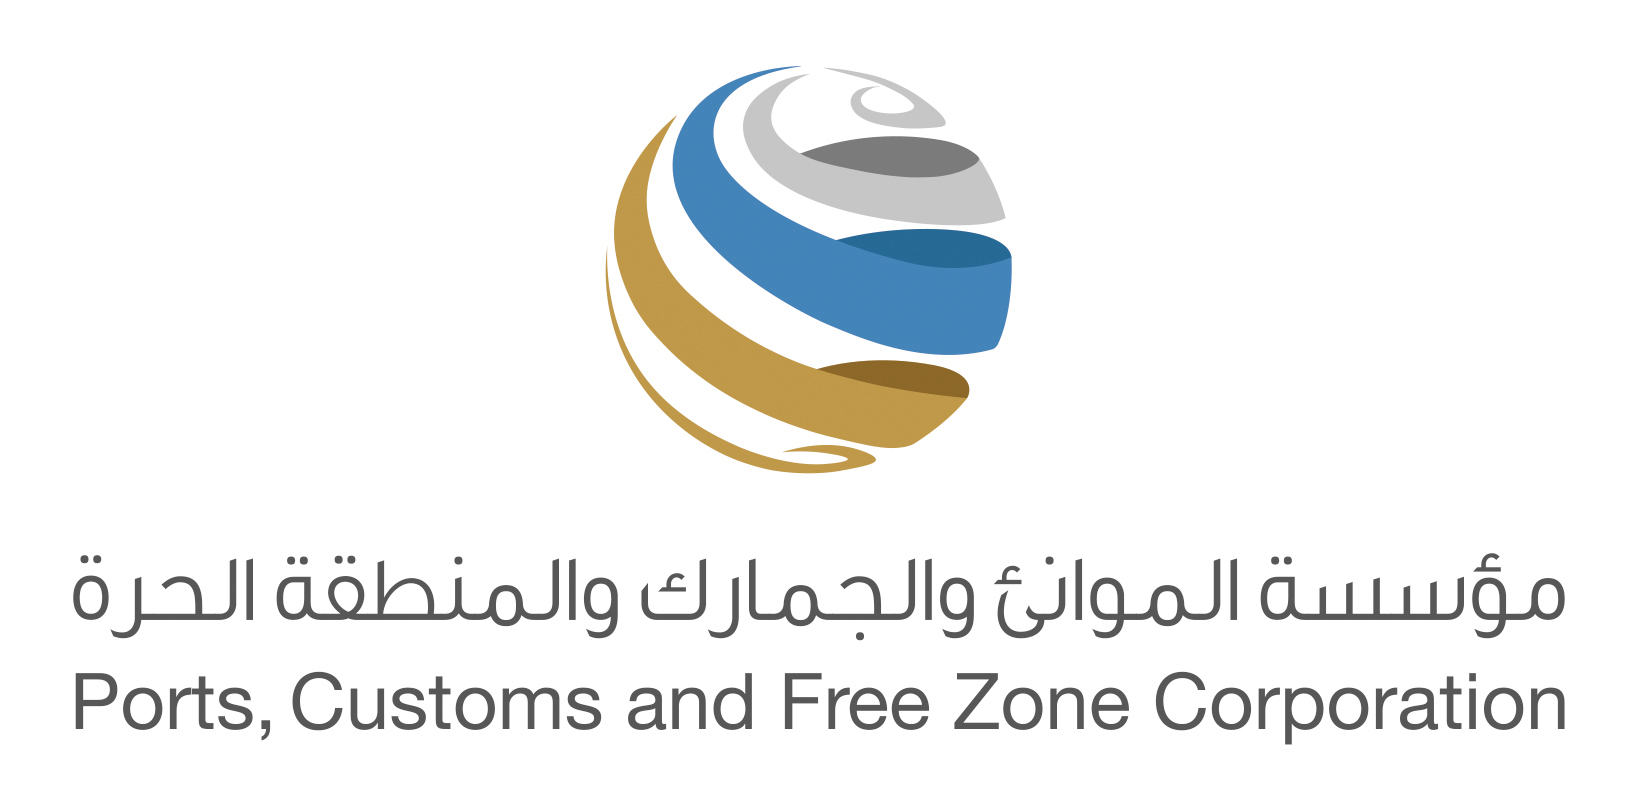 ن سليّم: الهوية الجديدة لمؤسسة الموانئ والجمارك والمنطقة الحرة تهدف لتعزيز مكانة دبي كمركز رائد مستدام على الصعيد العالمي